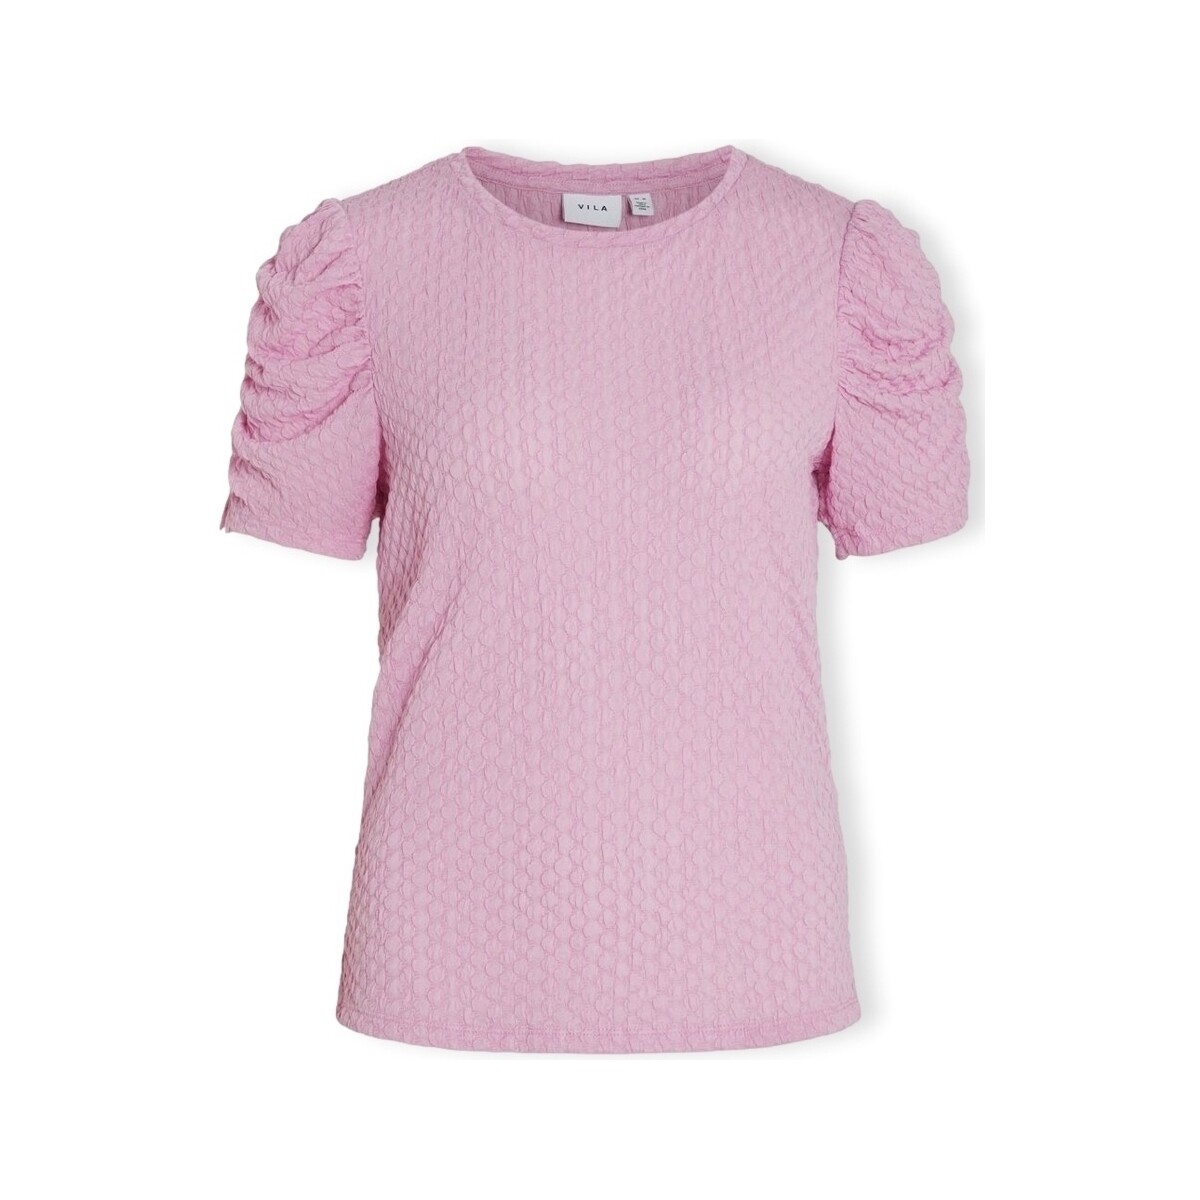 Textiel Dames Tops / Blousjes Vila Noos Top Anine S/S - Pastel Lavender Roze